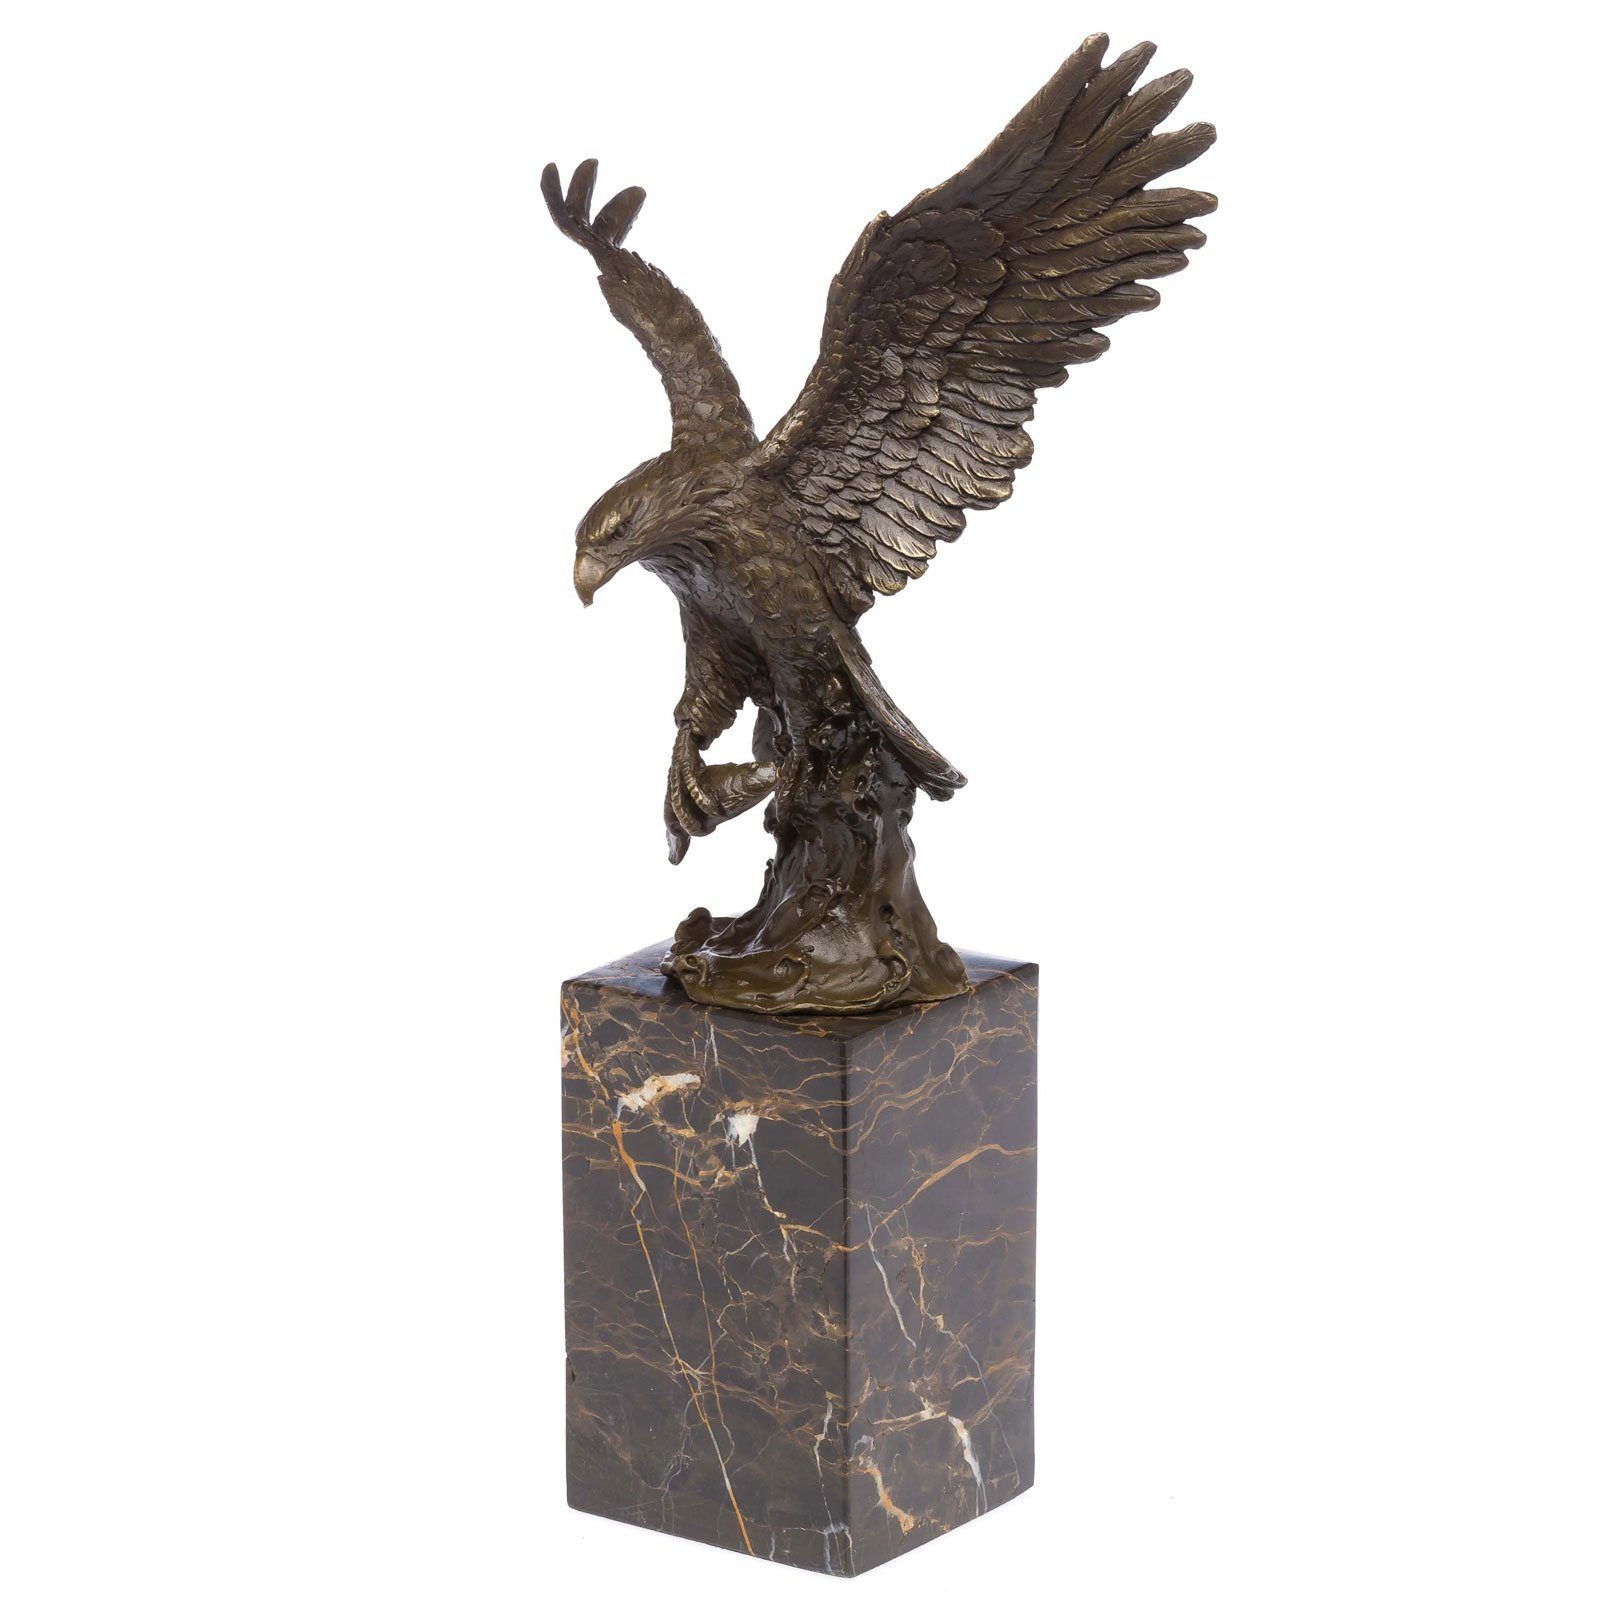 Beliebte Neuerscheinungen Aubaho Skulptur Bronzeskulptur Figur Königsadler Bronzeskulptur Seeadler Eagle 36cm Adler